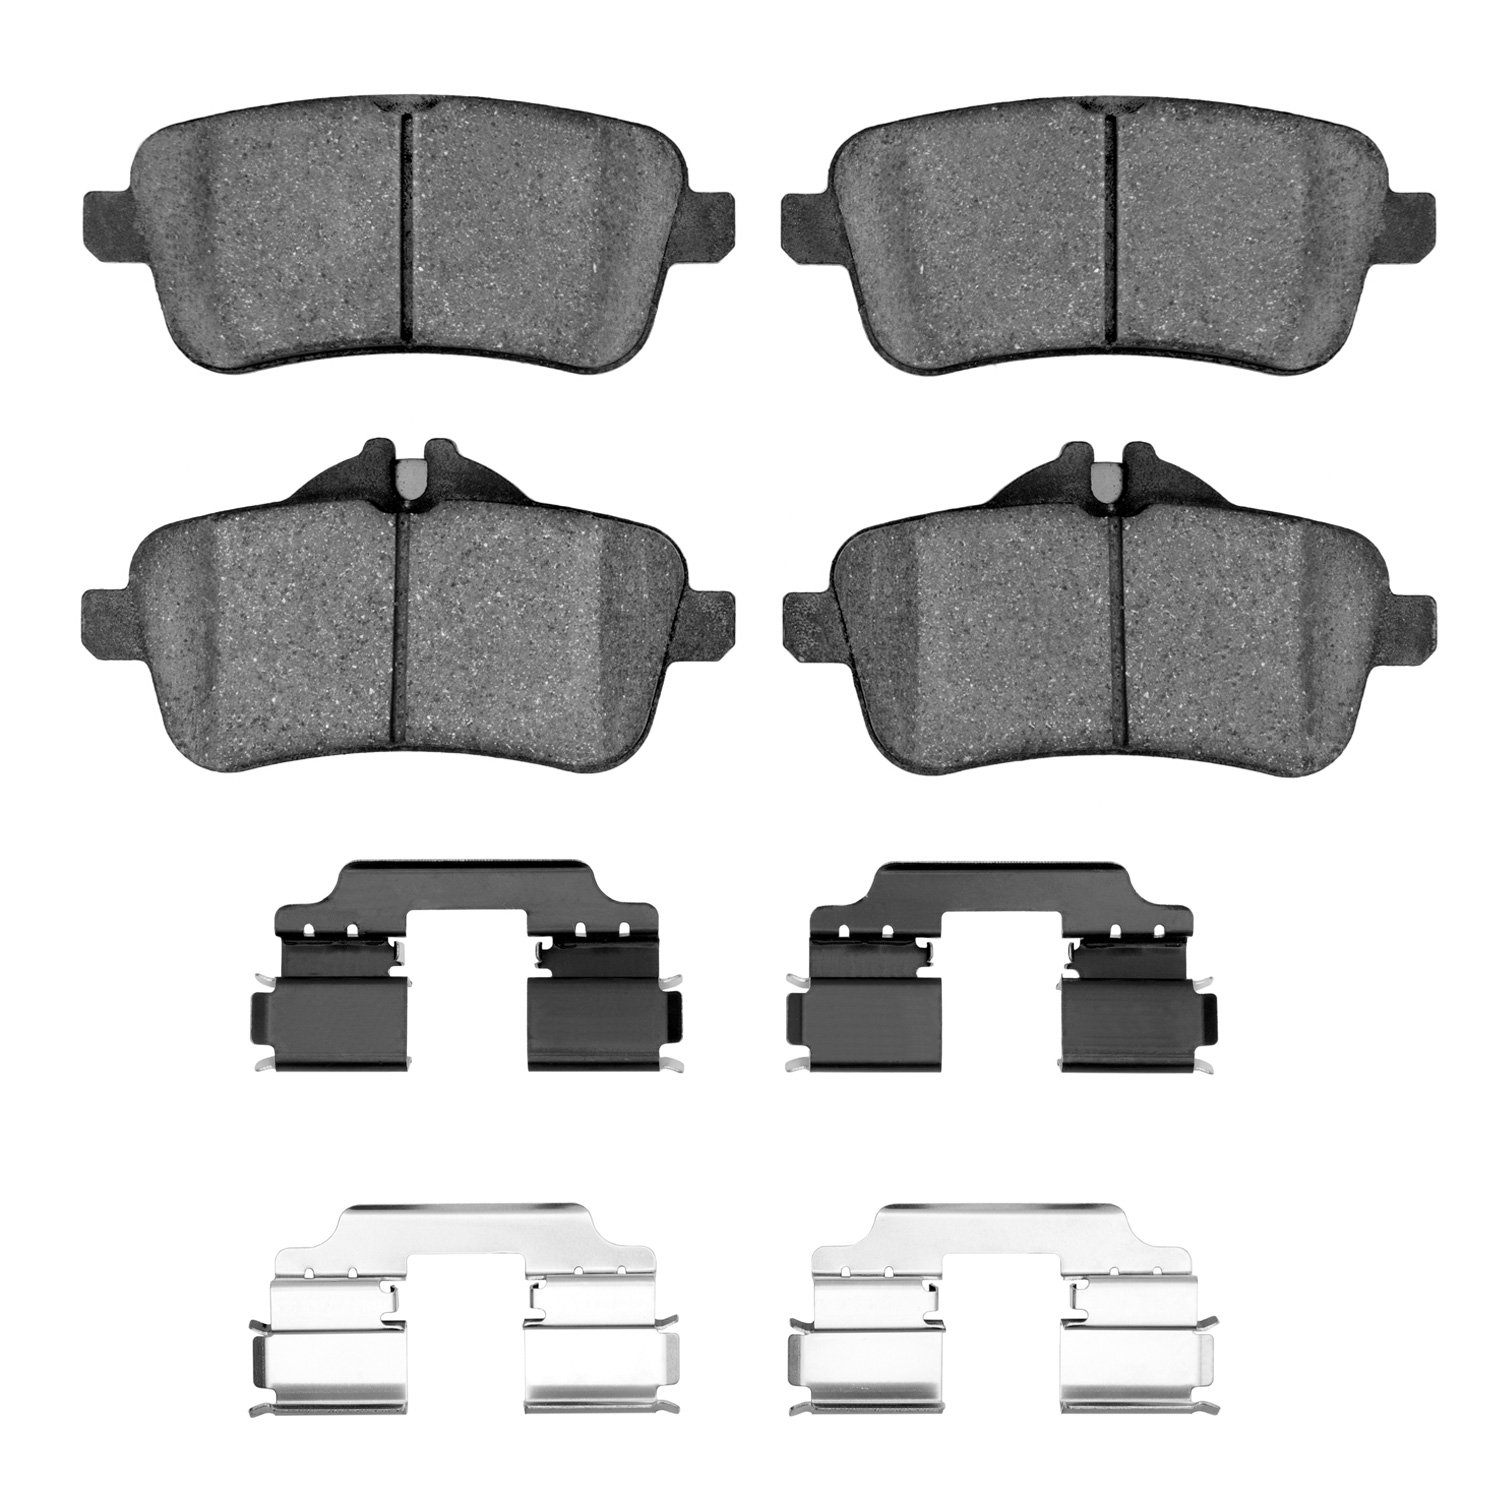 5000 Advanced Low-Metallic Brake Pads & Hardware Kit, Multiple Makes/Models